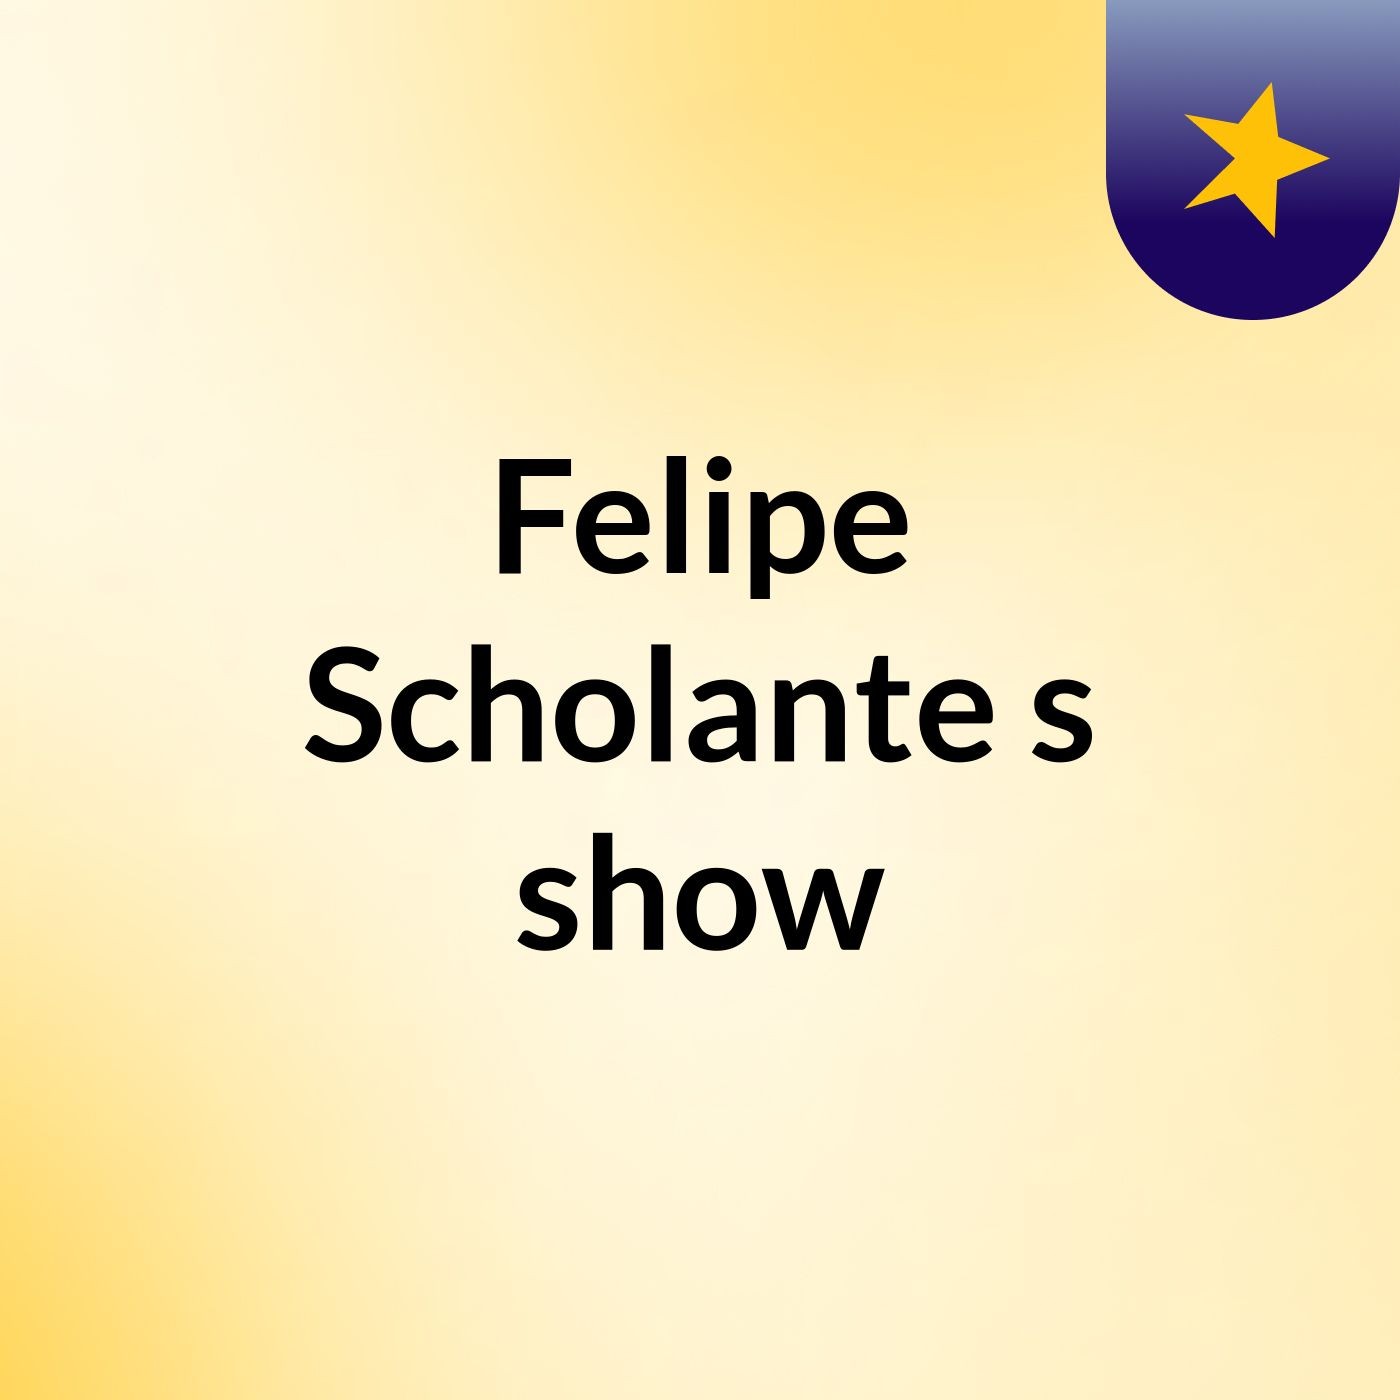 Felipe Scholante's show